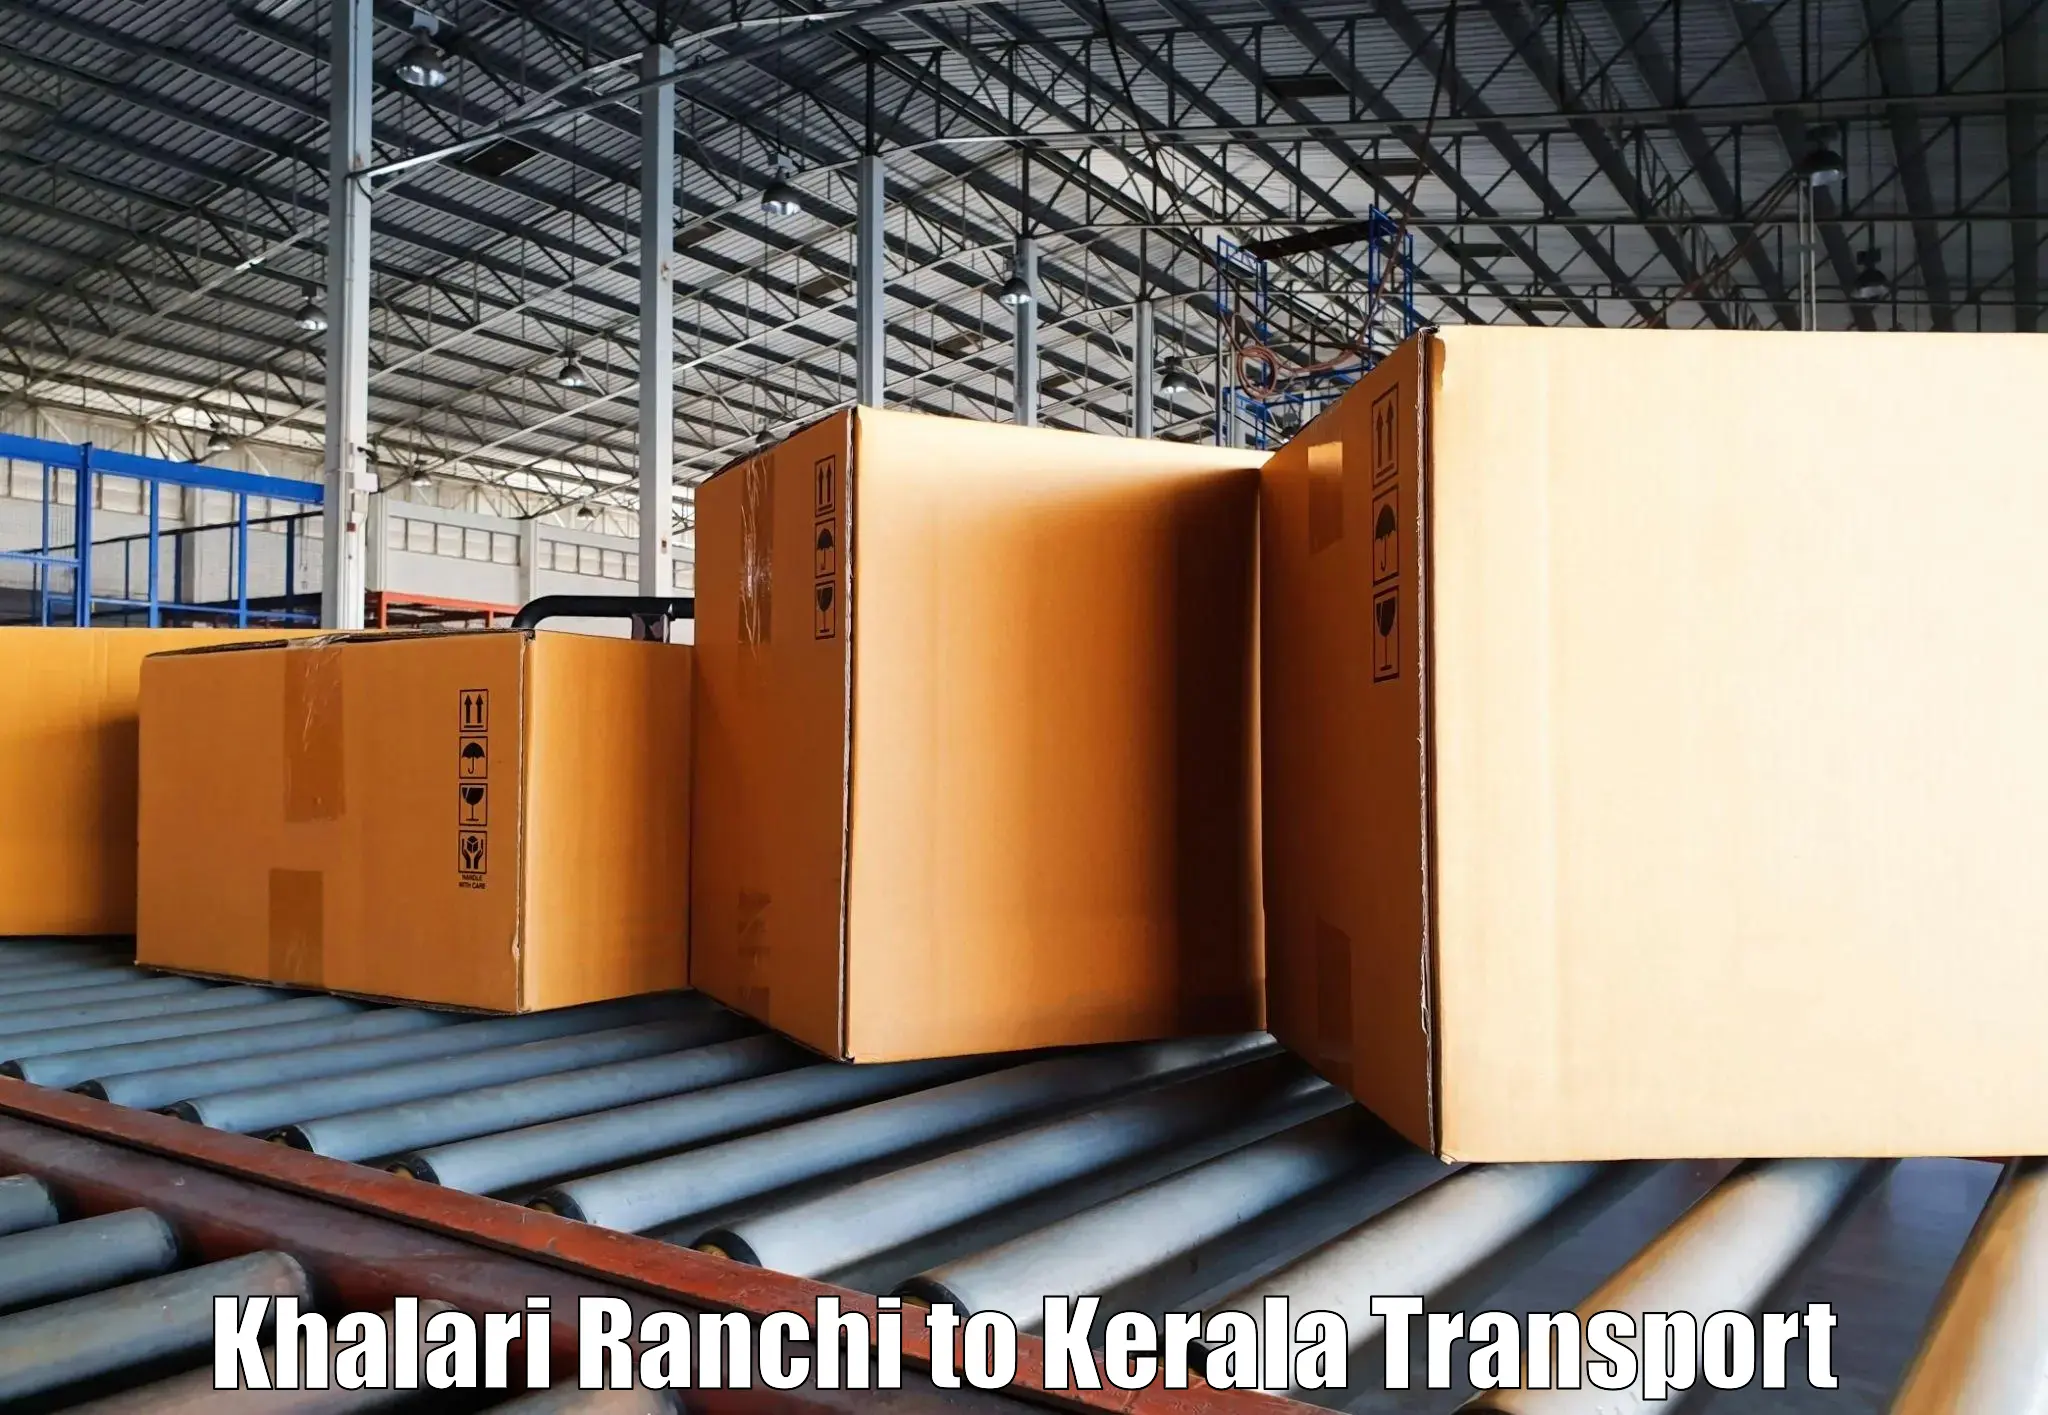 Daily transport service Khalari Ranchi to Udumbanchola